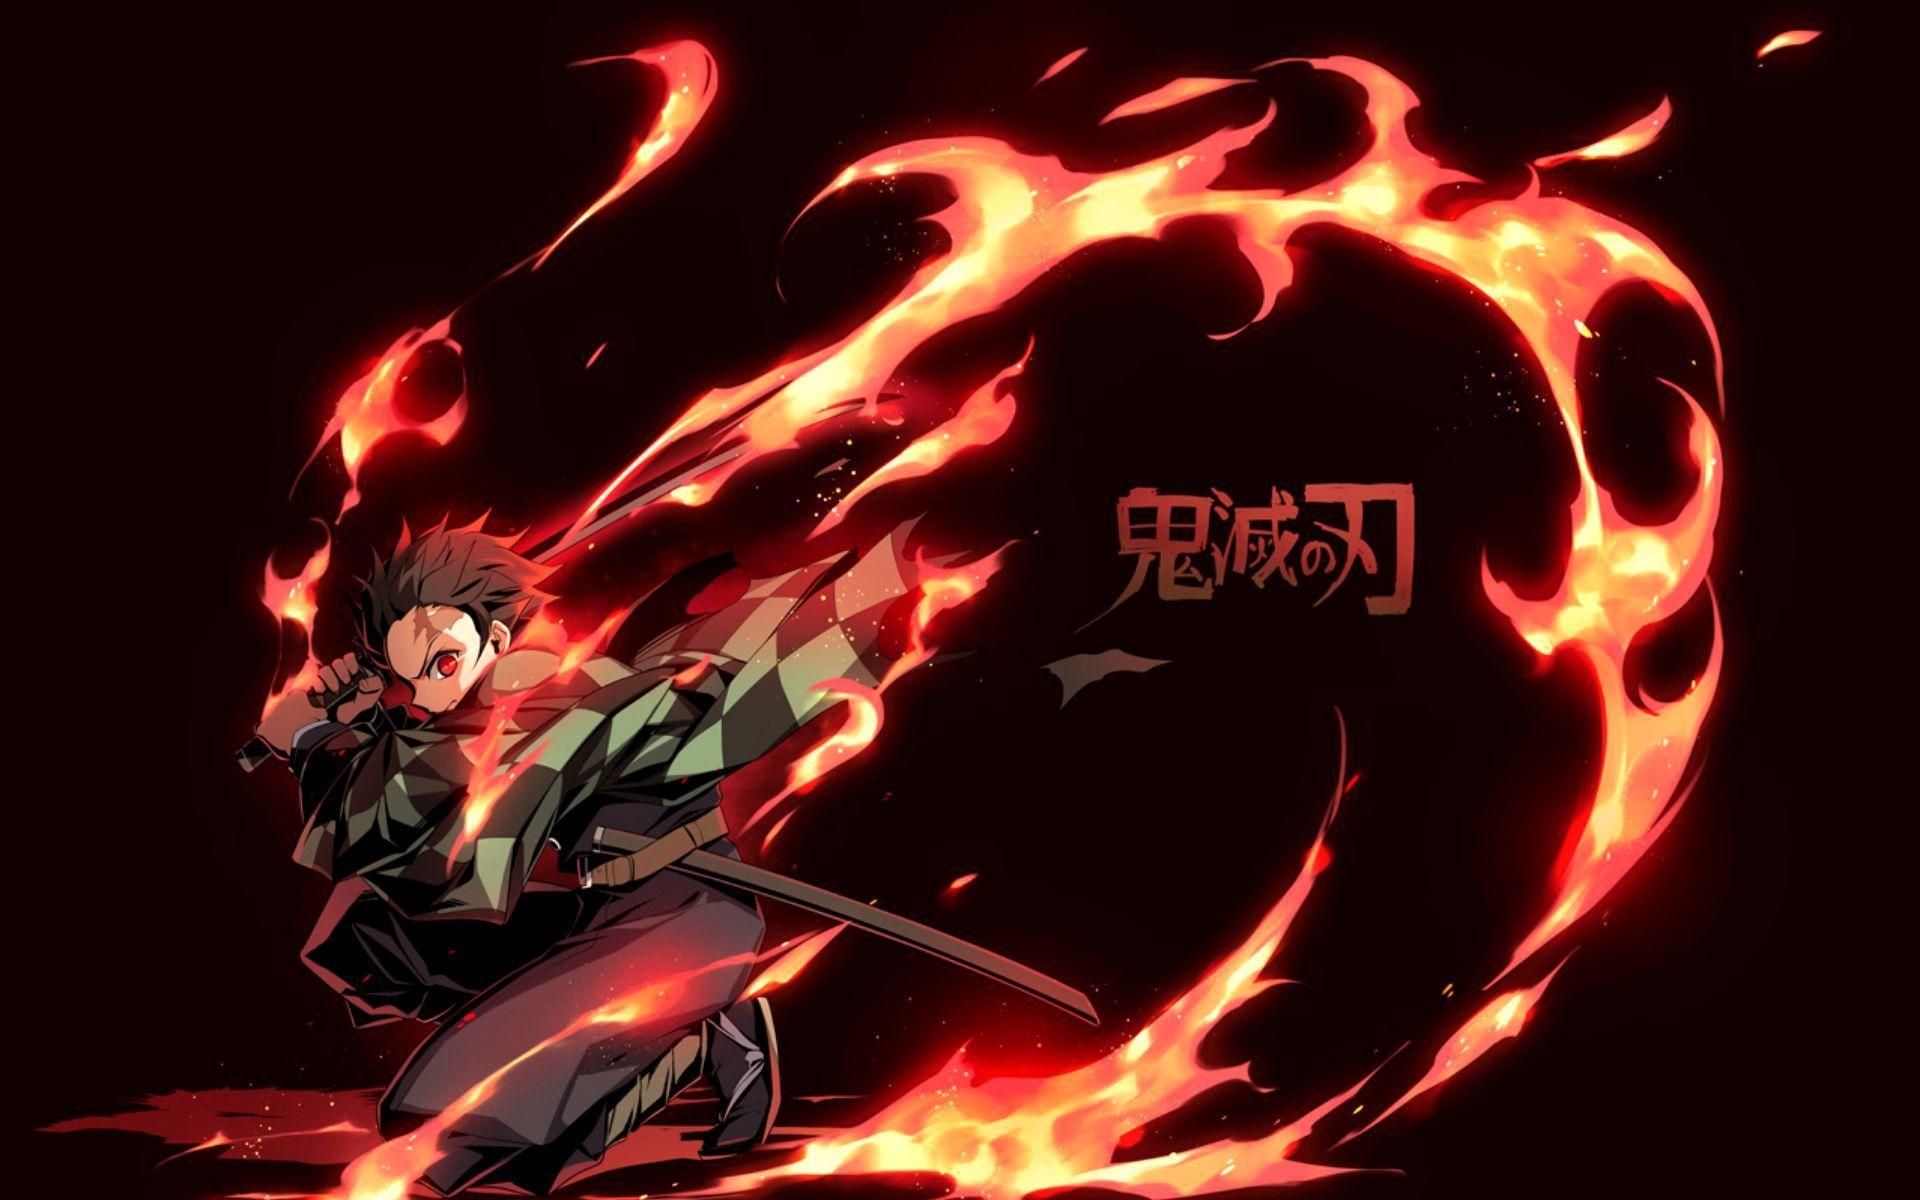 Wallpaper Anime Darkness Tanjiro Kamado Nezuko Kamado Demon Slayer  Kimetsu no Yaiba Background  Download Free Image